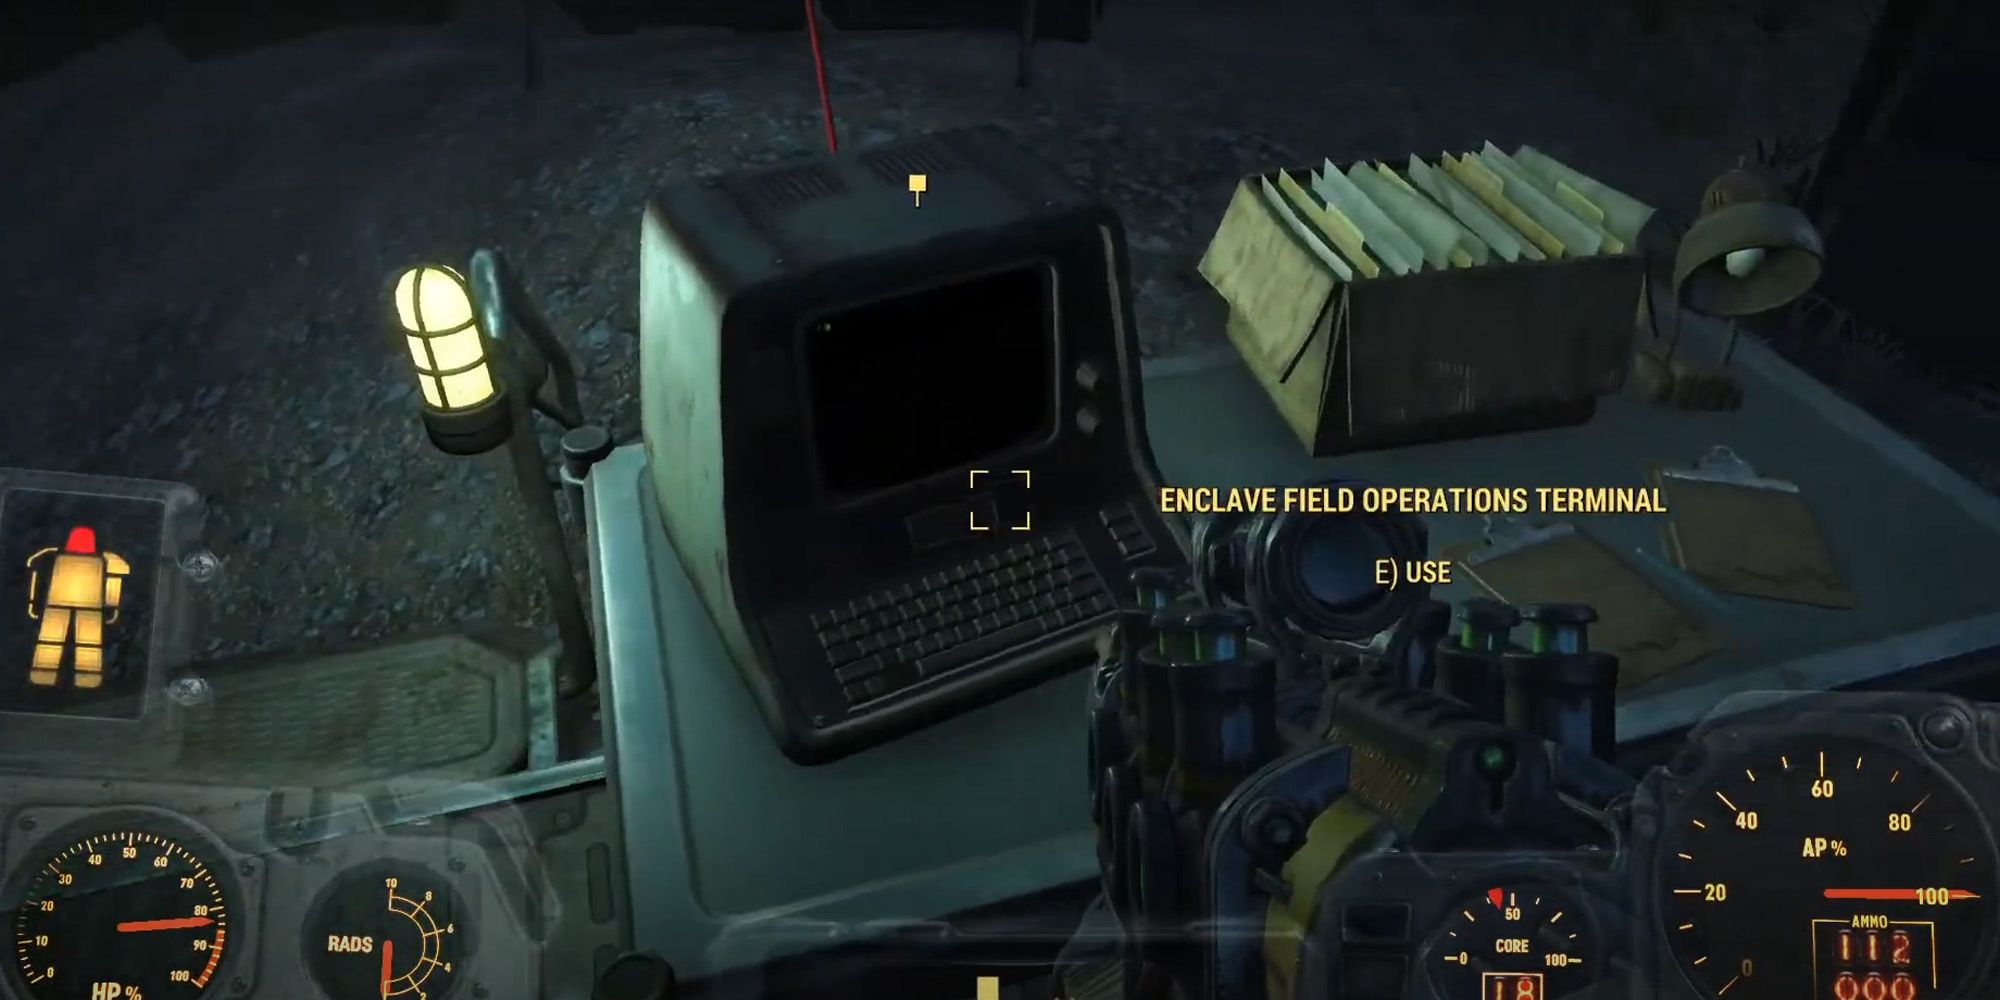 Как получить X-02 и силовую броню Hellfire в Fallout 4